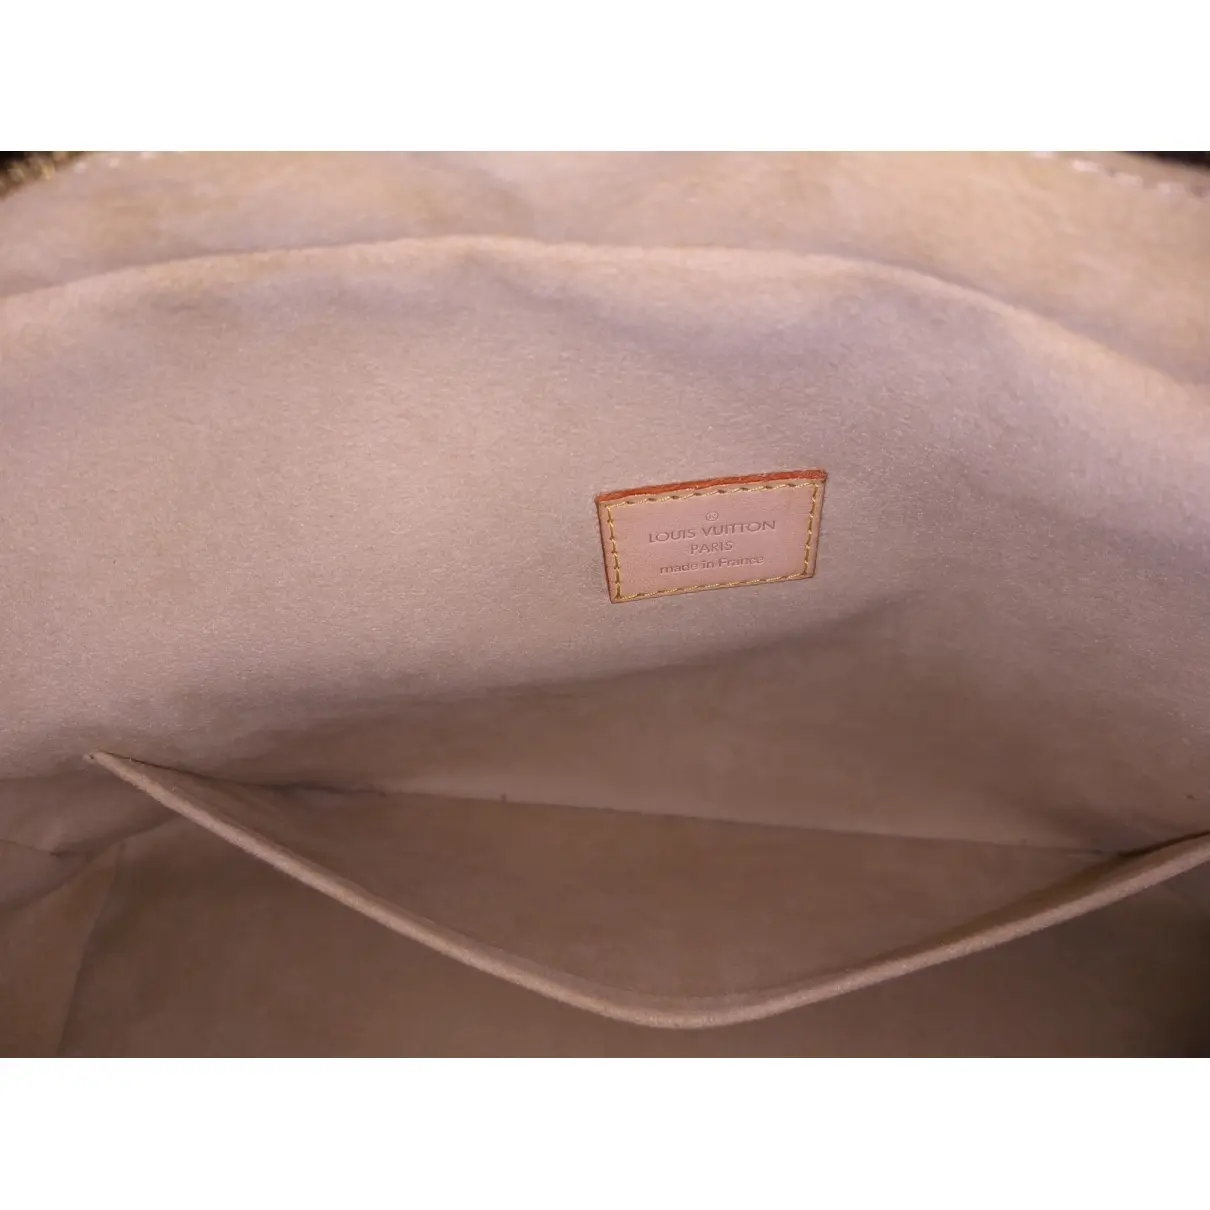 Louis Vuitton Manhattan cloth handbag for sale